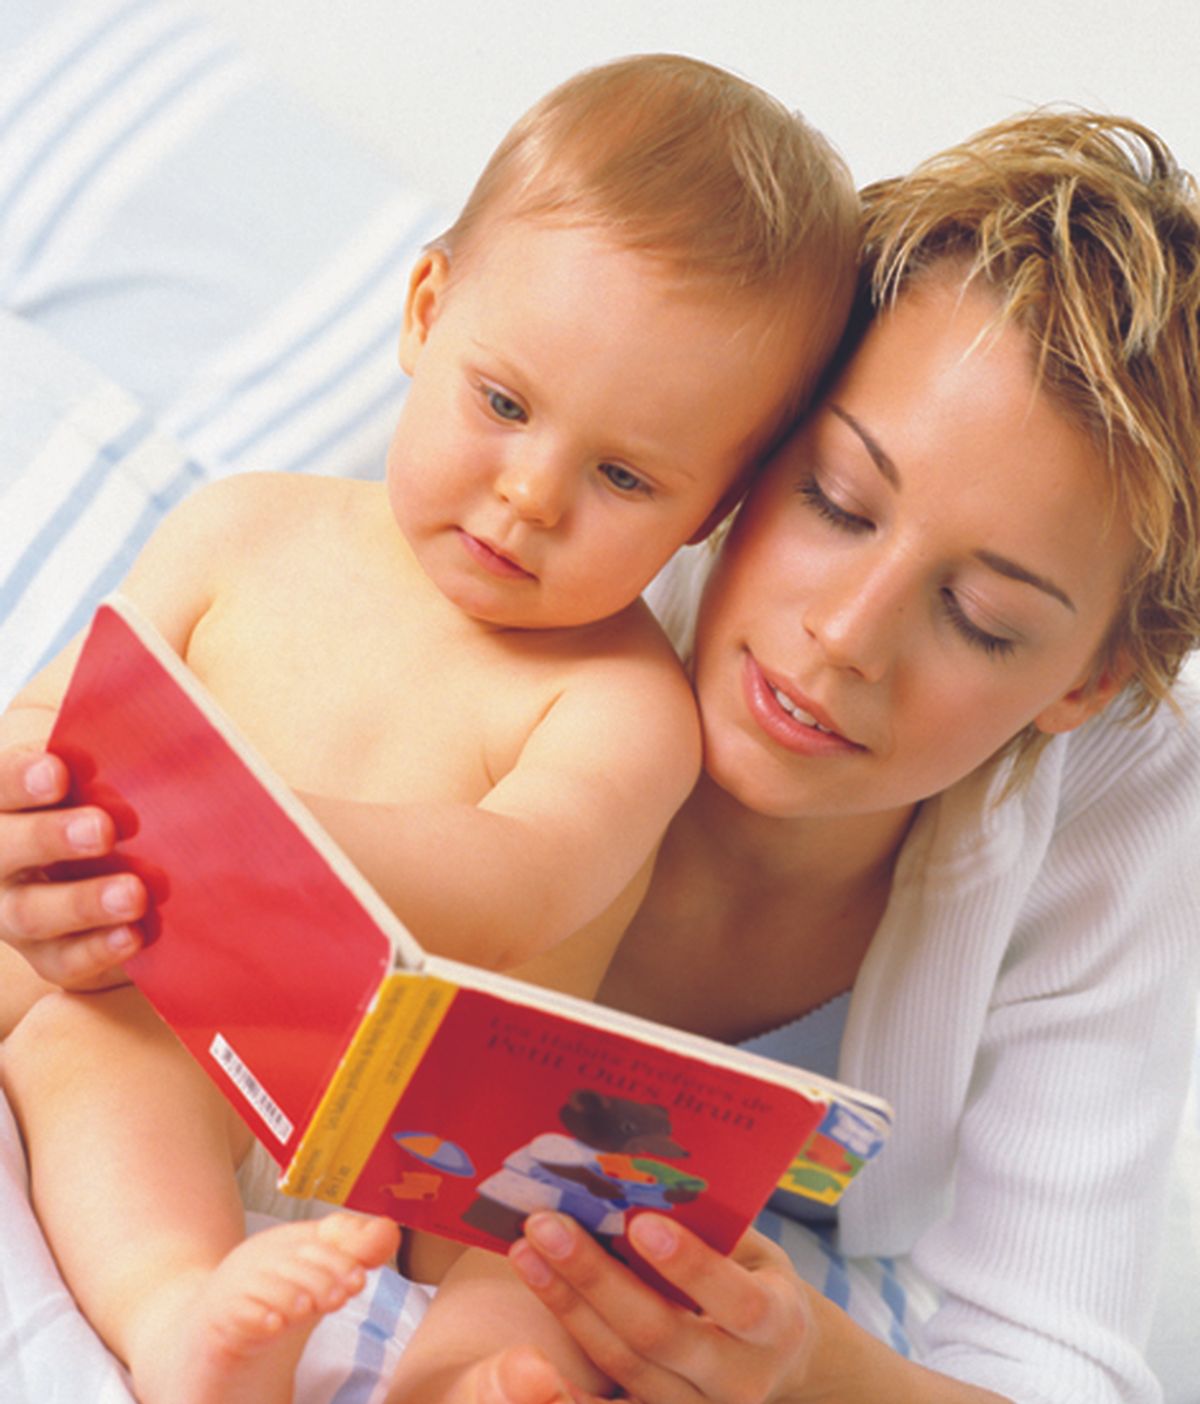 Leer un cuento a su bebé antes de dormir es tan importante como una buena alimentación